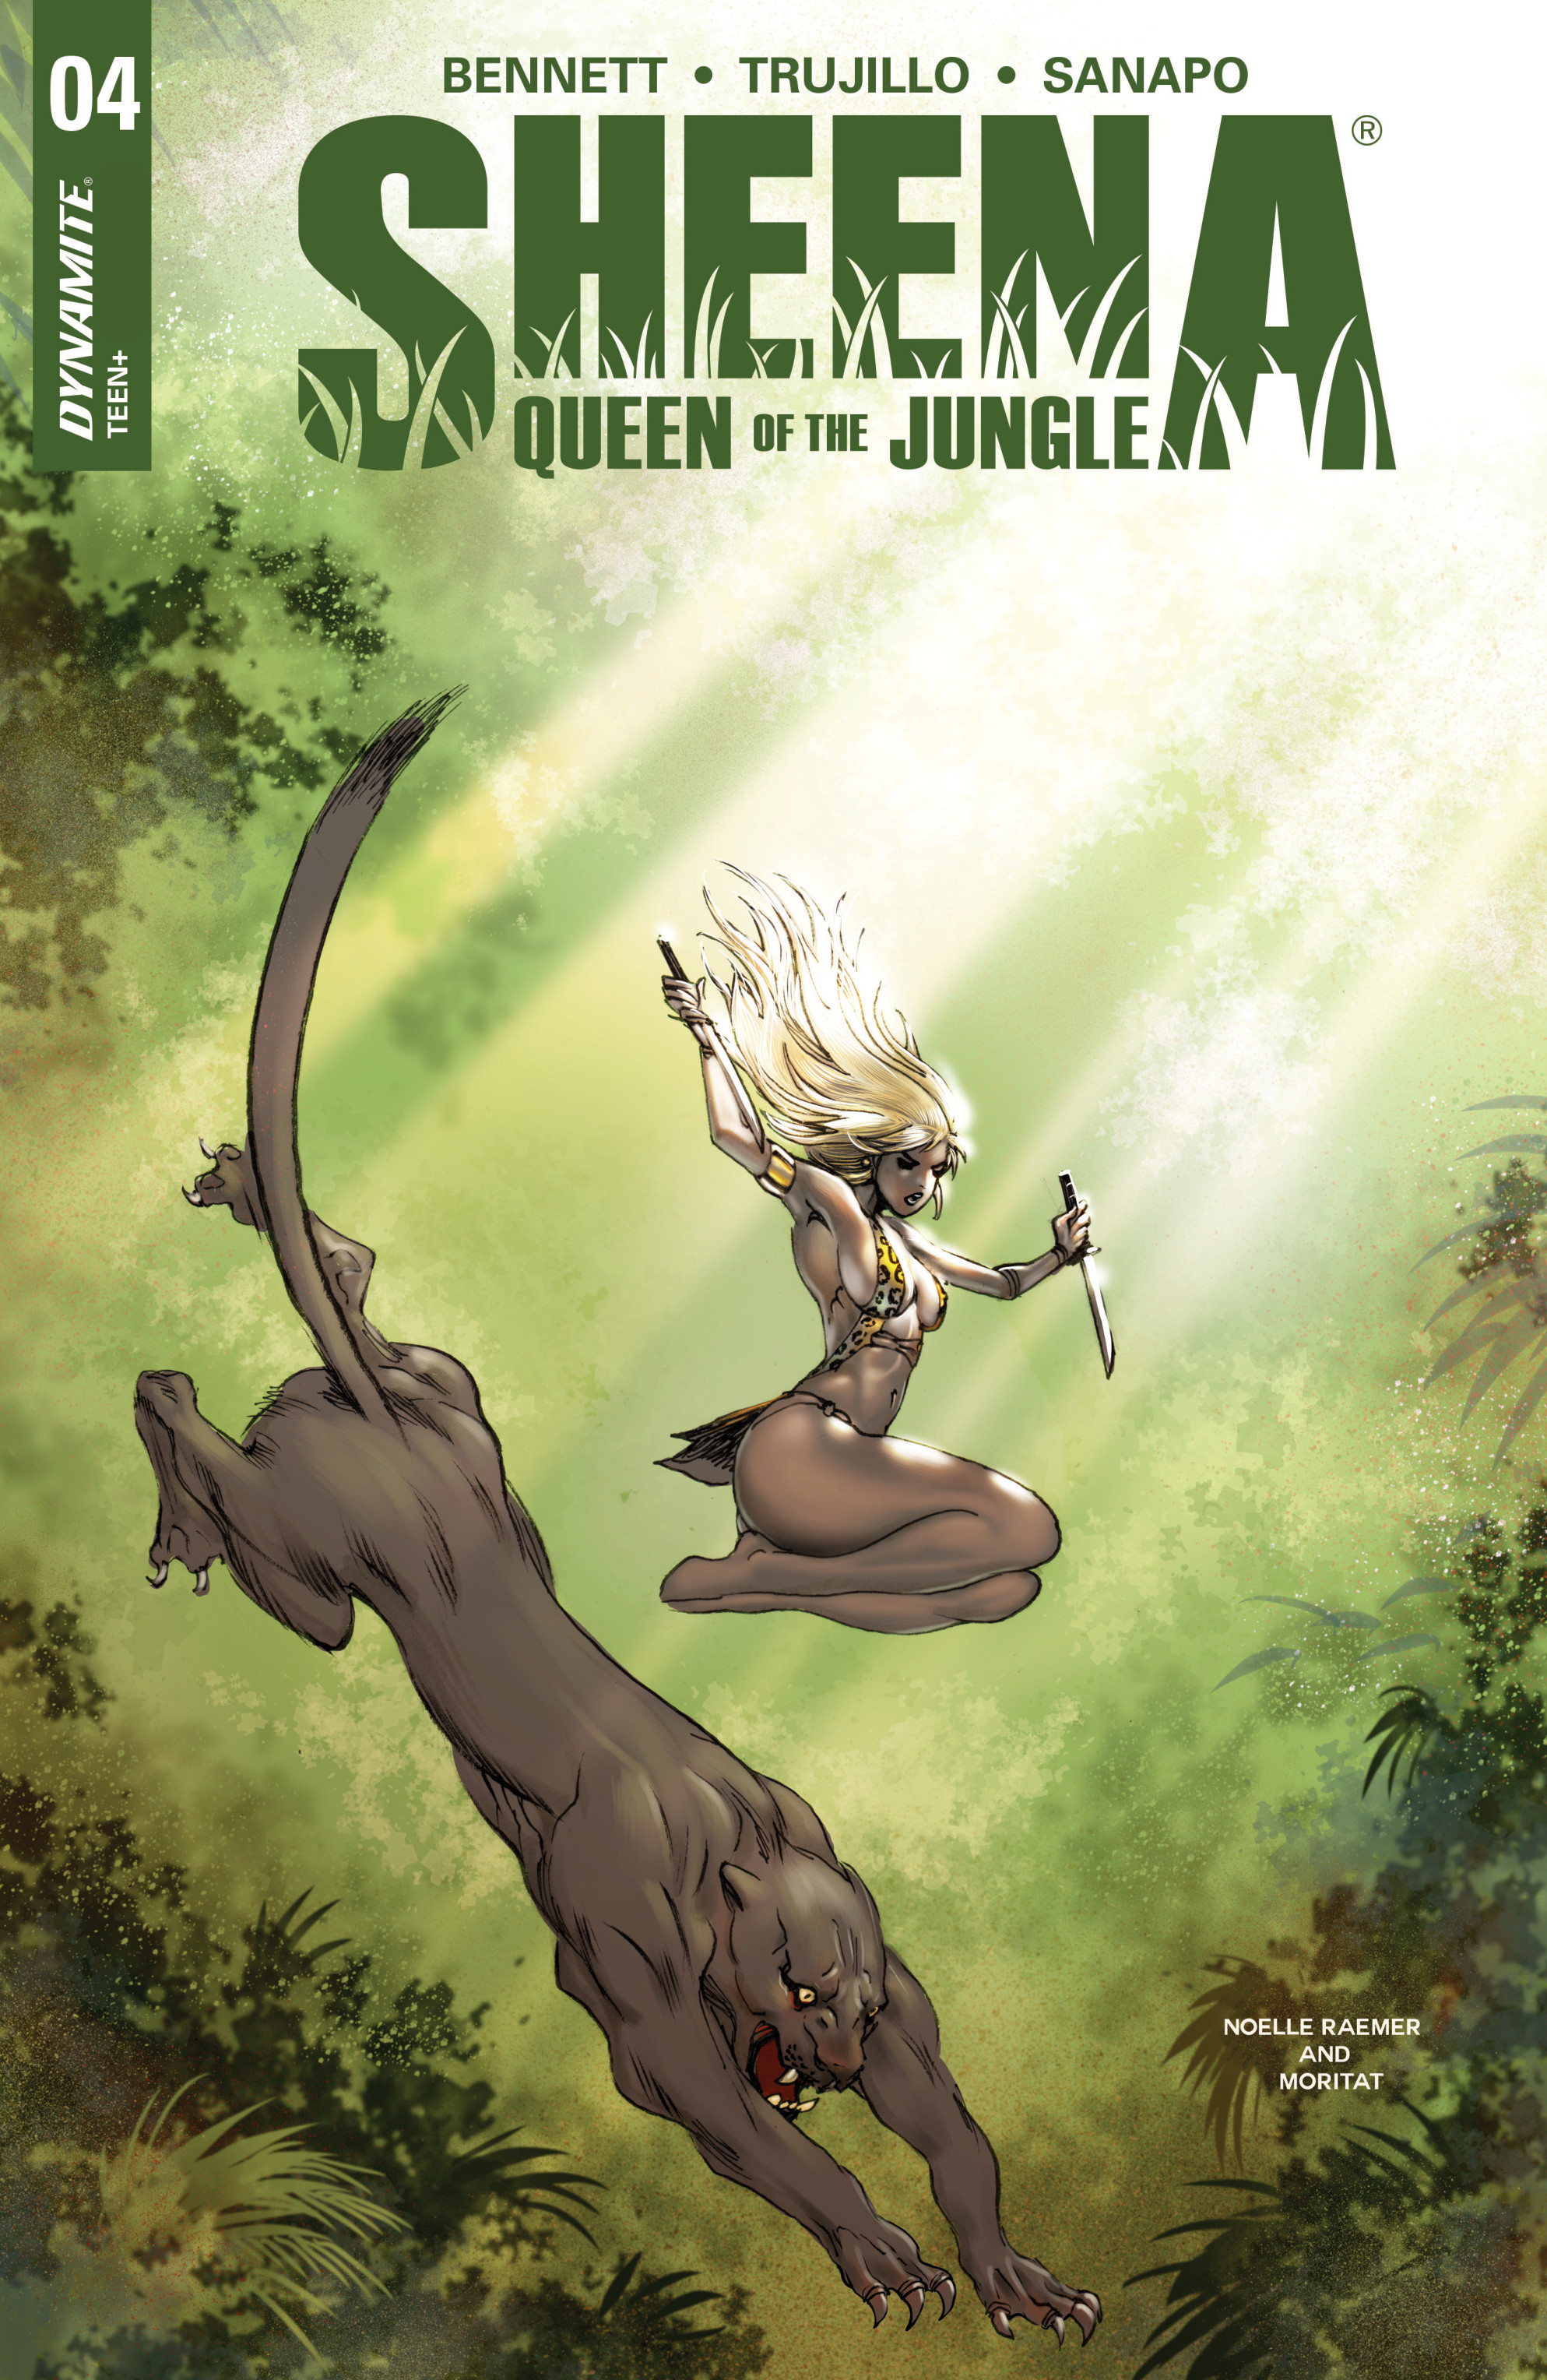 Jungle queen